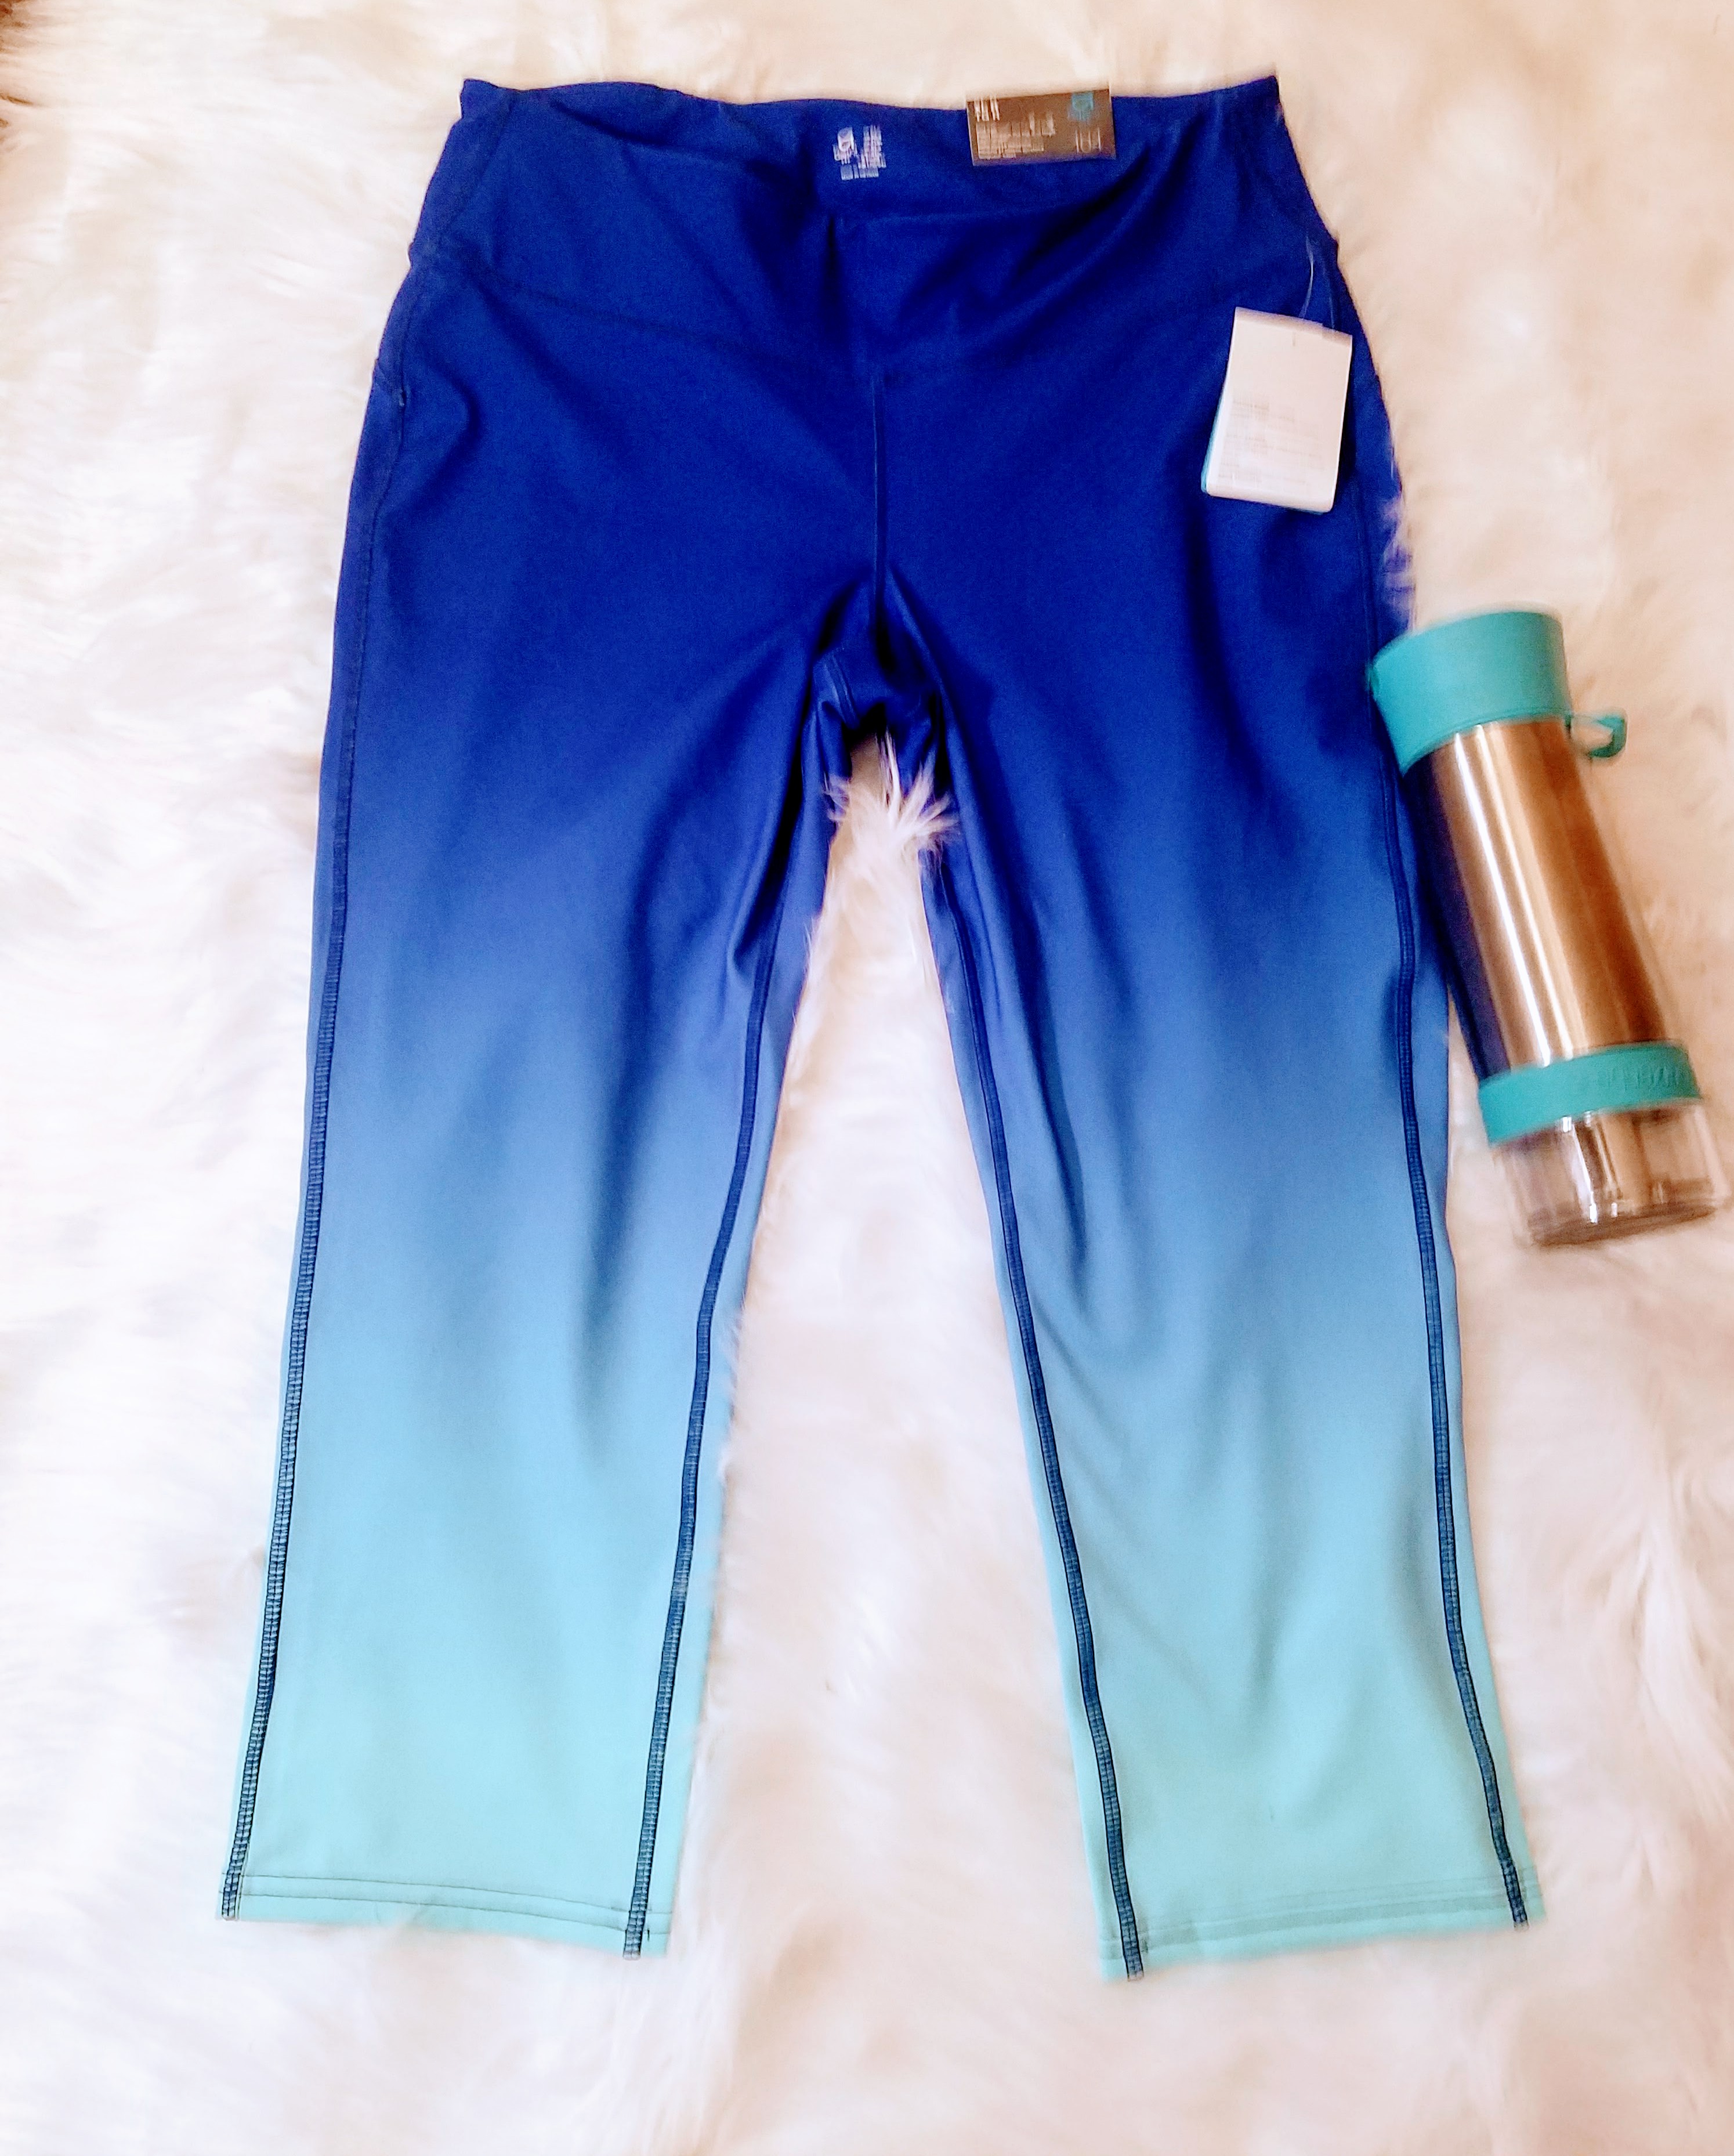 Gap Factory NWT Blue Ombre Fit Capri Pants - XL